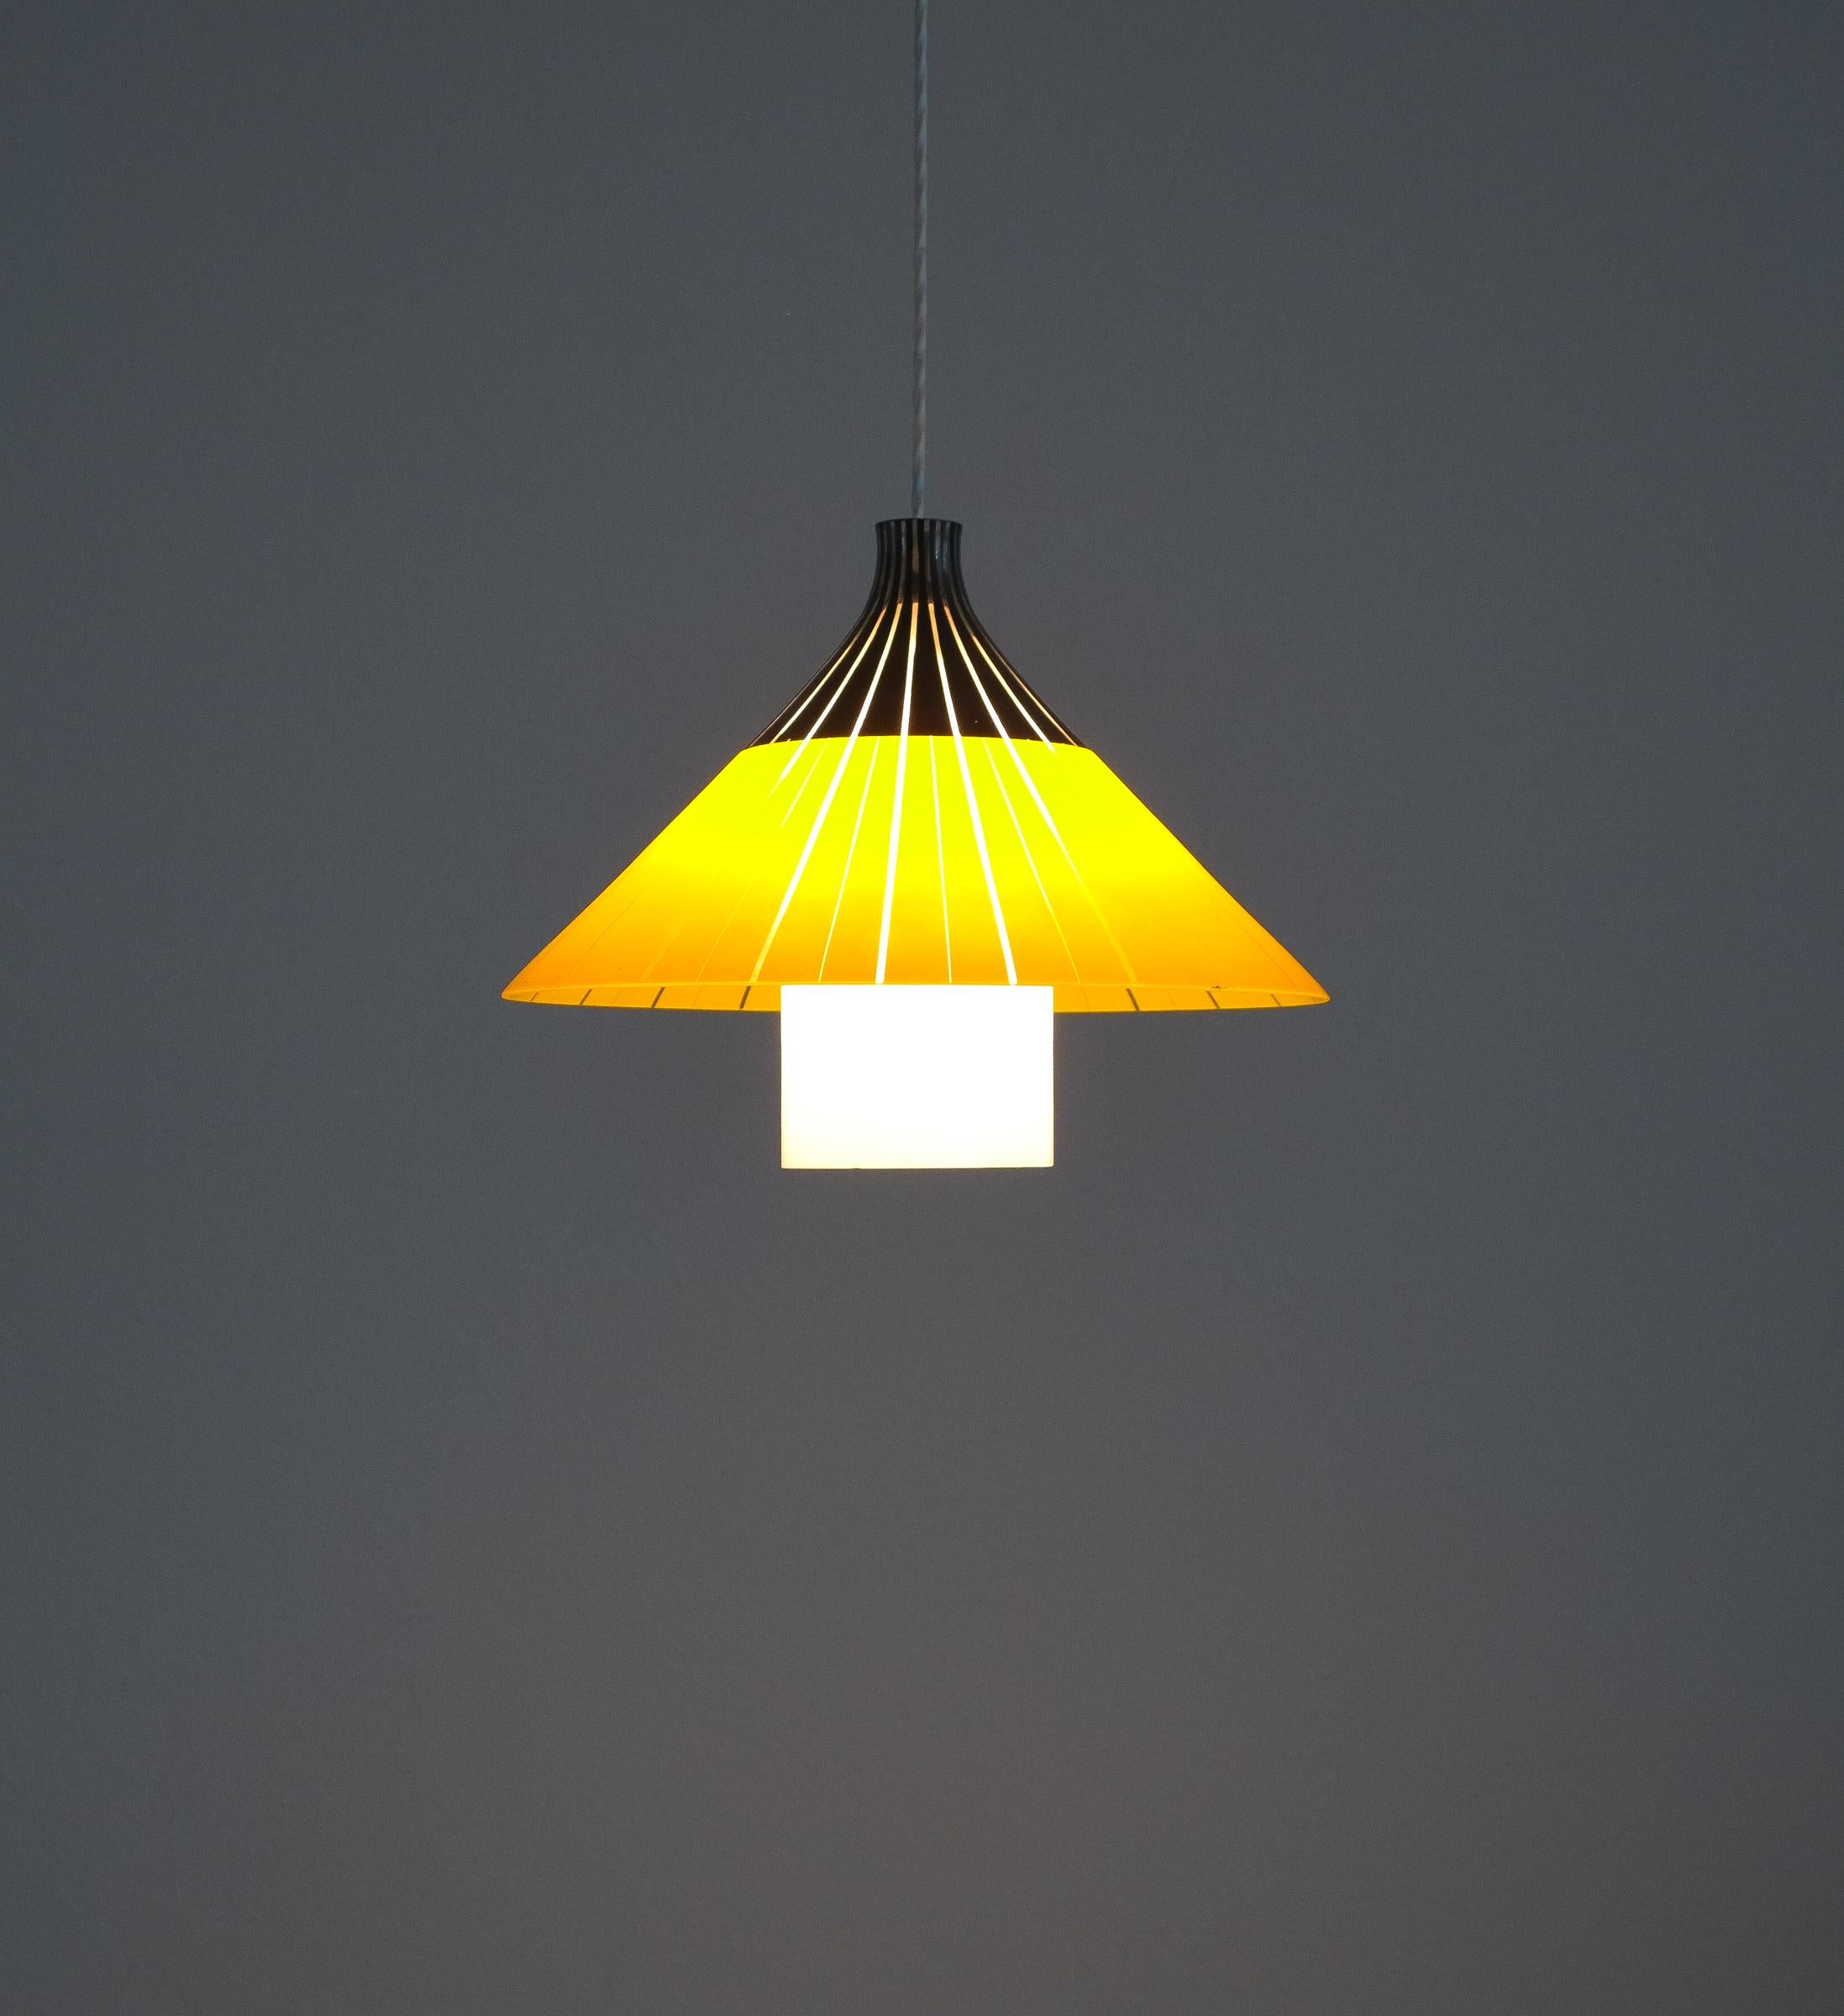 Lampe pendante en verre blanc jaune, Italie, vers 1950

Magnifique lampe pendante italienne en forme de chapeau de riz asiatique, le chapeau conique est entièrement réalisé en verre jaune, noir avec des bandes de verre clair. Le diffuseur